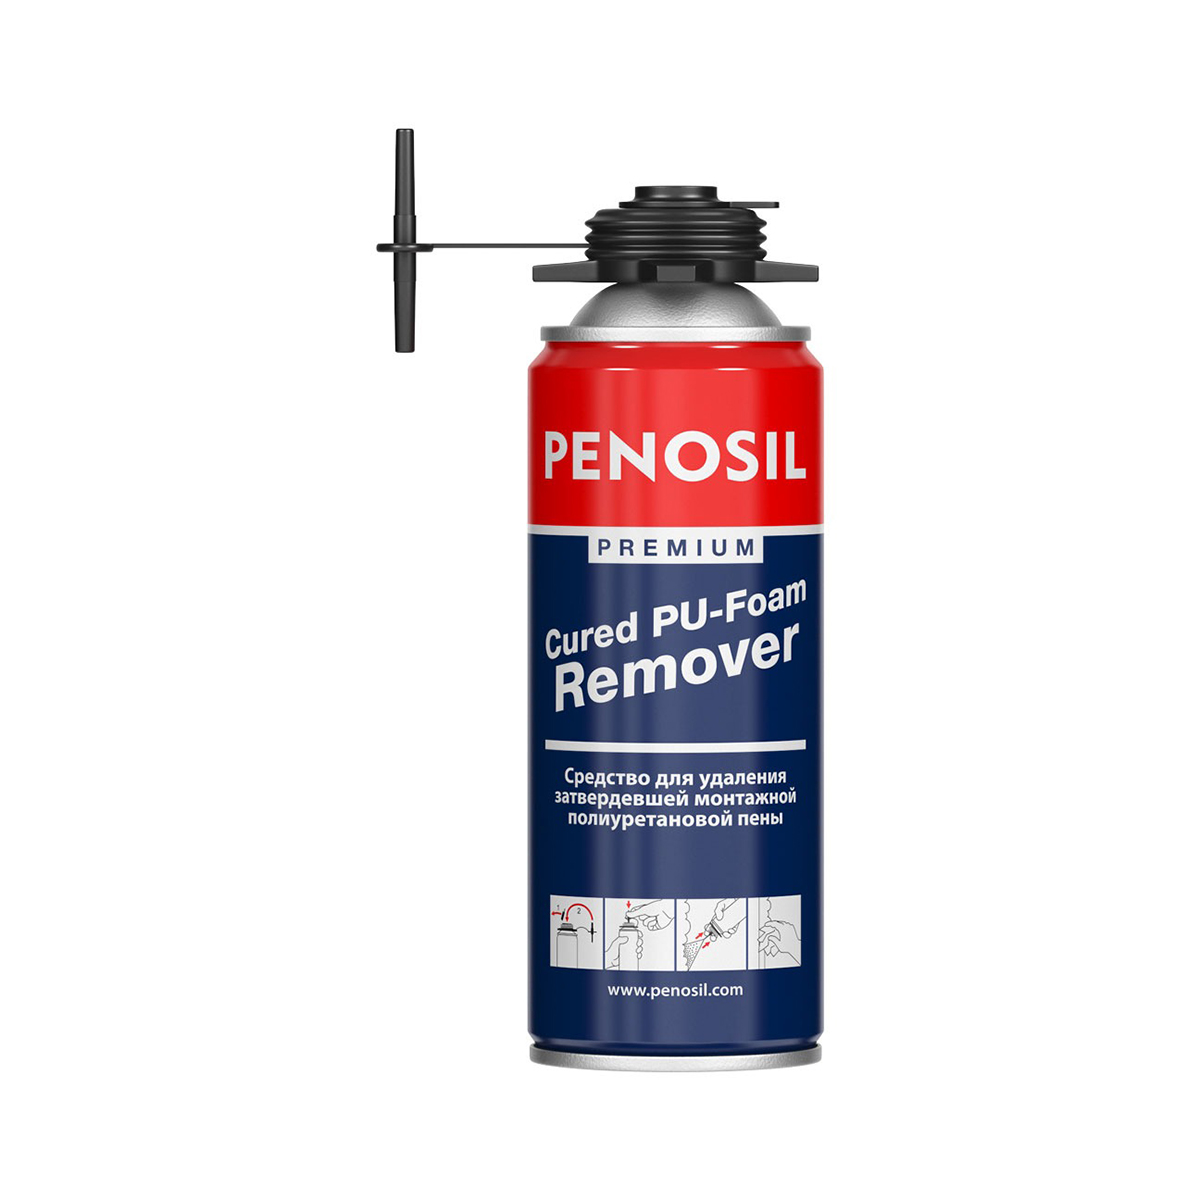 Очиститель застывшей монтажной пены Penosil Premium Cured PU-Foam Remover, 340 мл очиститель для карбюратора инжектора аэрозольный 335 мл avs avk 045 a078522s